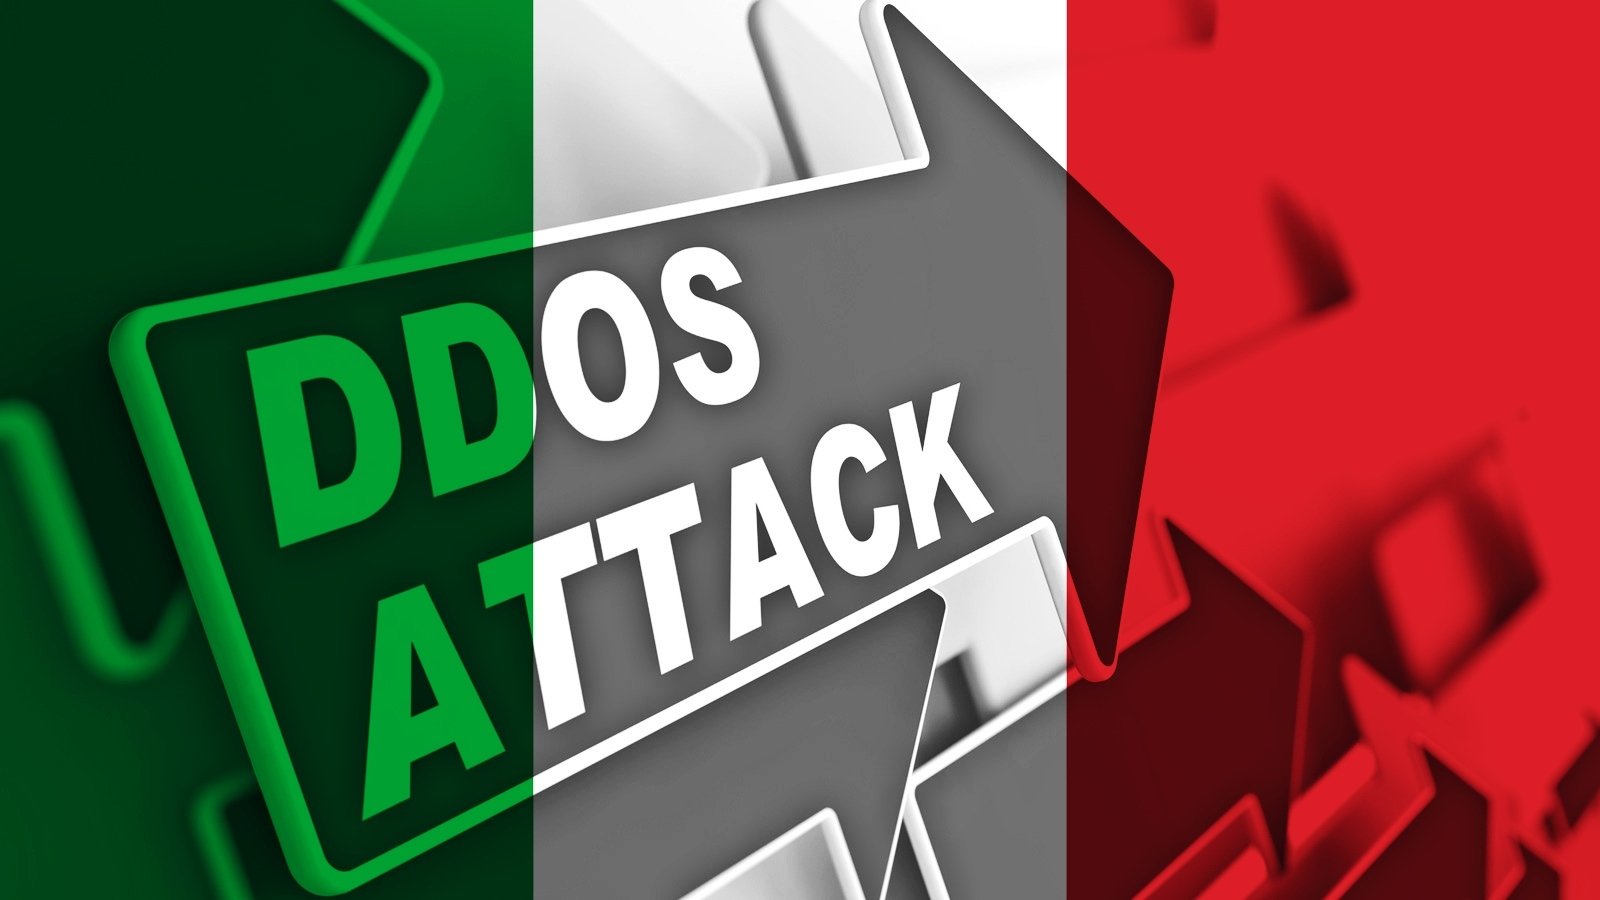 L’Italia avverte le organizzazioni di prepararsi per i prossimi attacchi DDoS